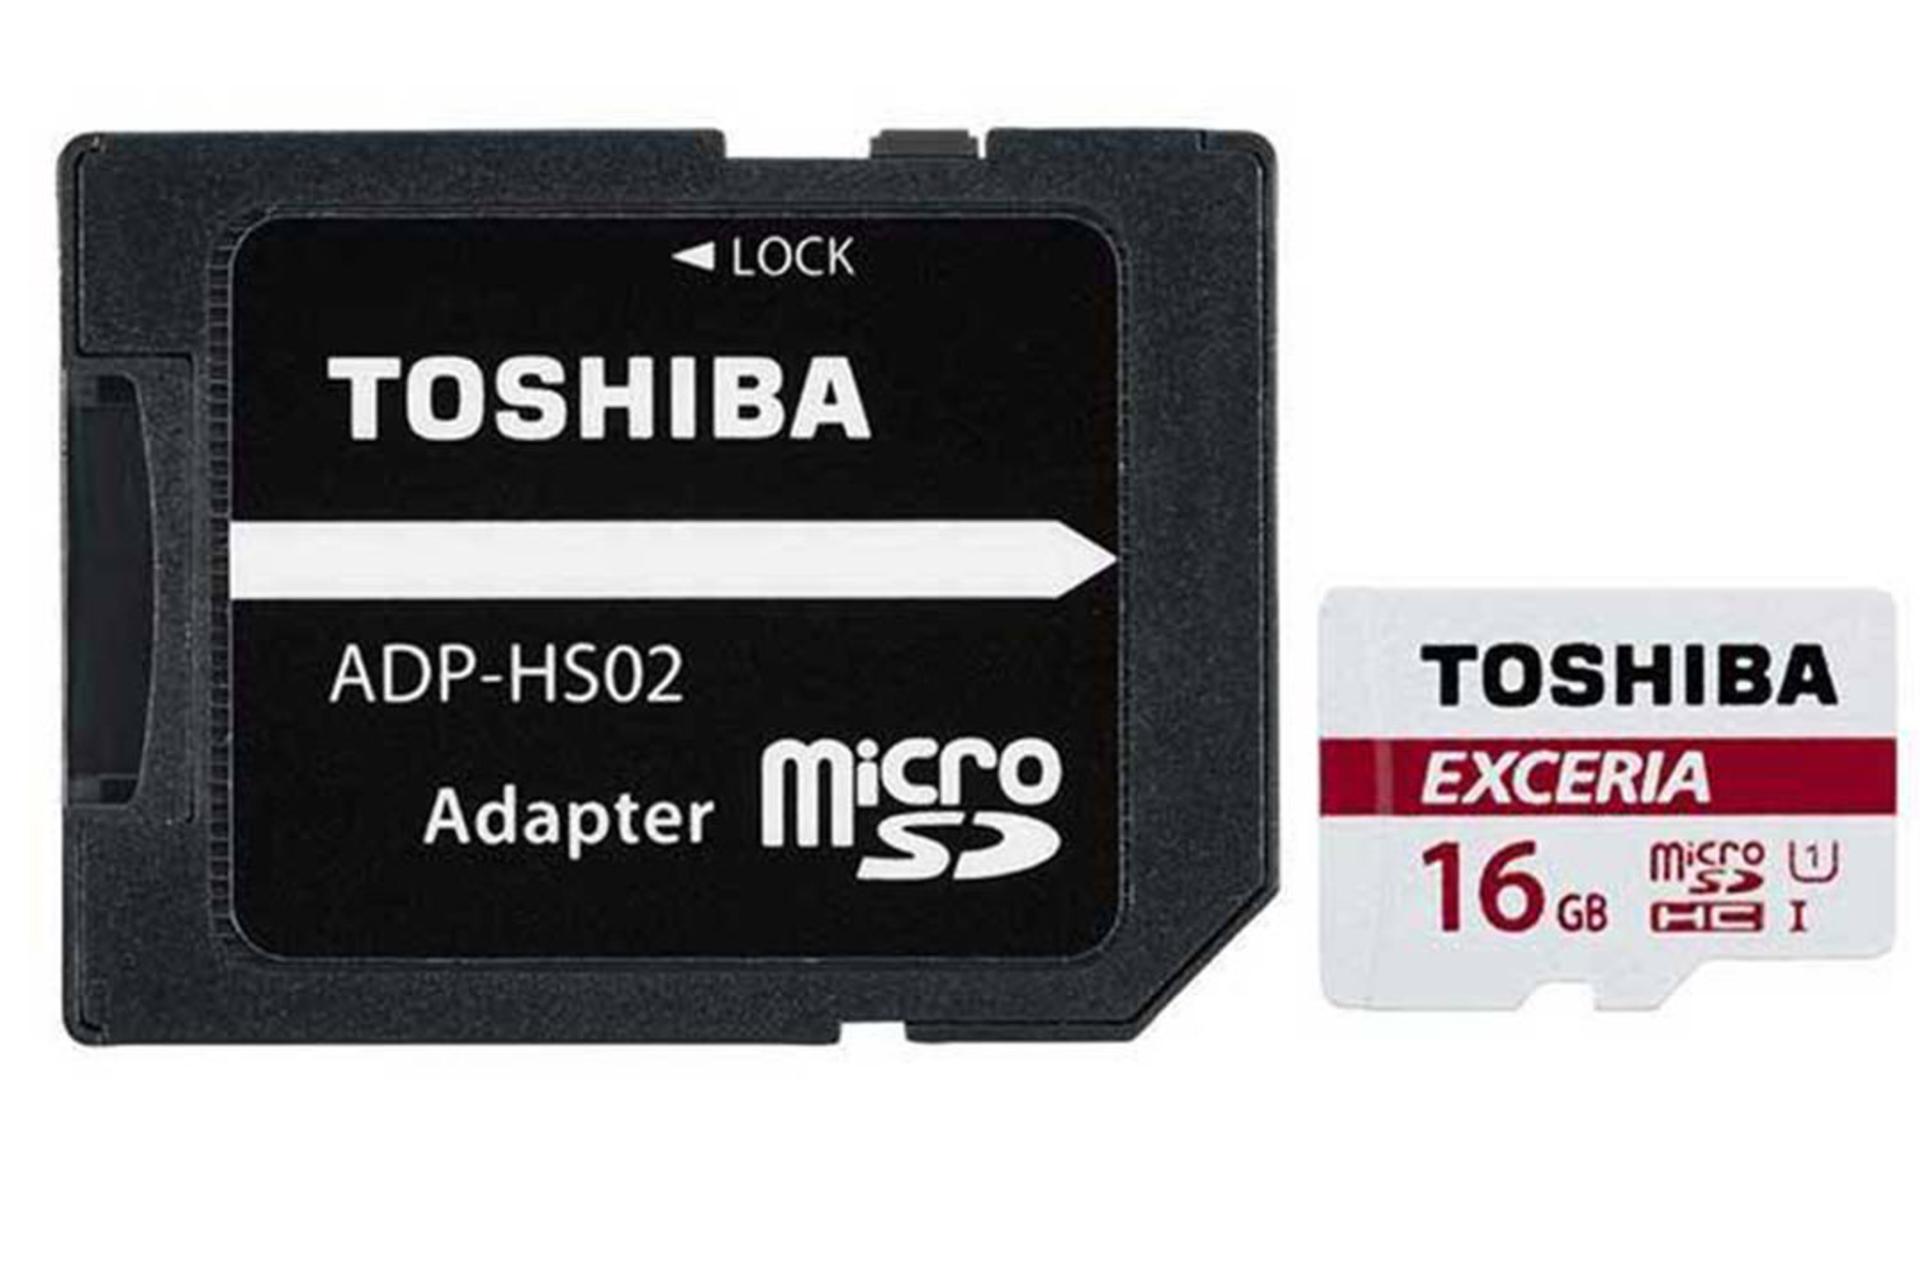 مرجع متخصصين ايران Toshiba Exceria M302 microSDHC Class 10 UHS-I 16GB